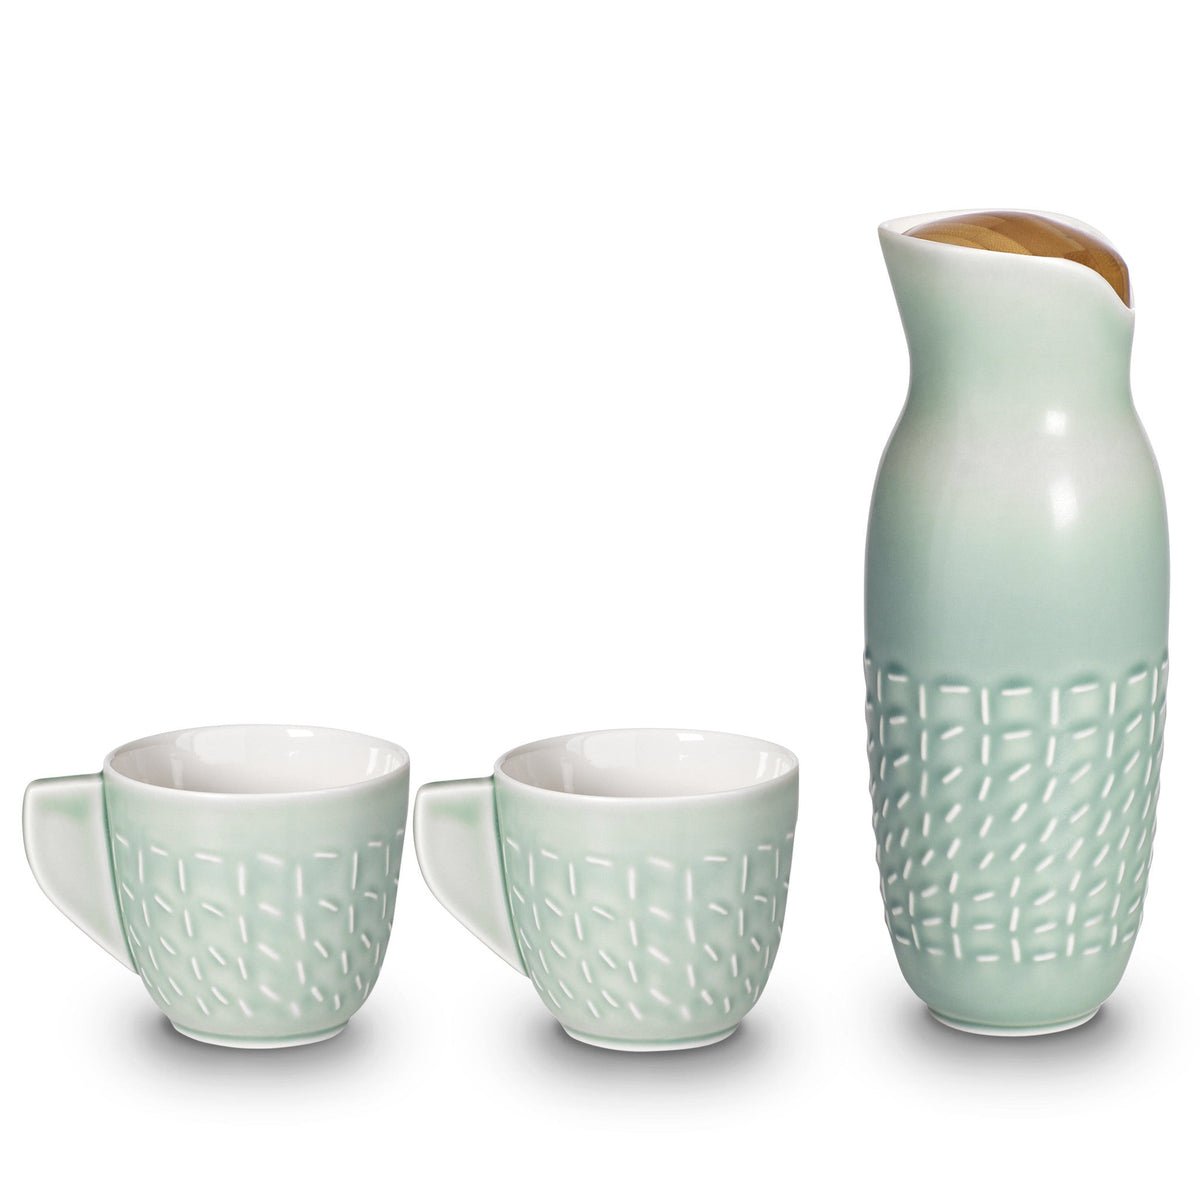 Footprint Carafe Set with Tea Cups, Carafe 31oz, Cup 10 oz, Ceramics, Bamboo-0